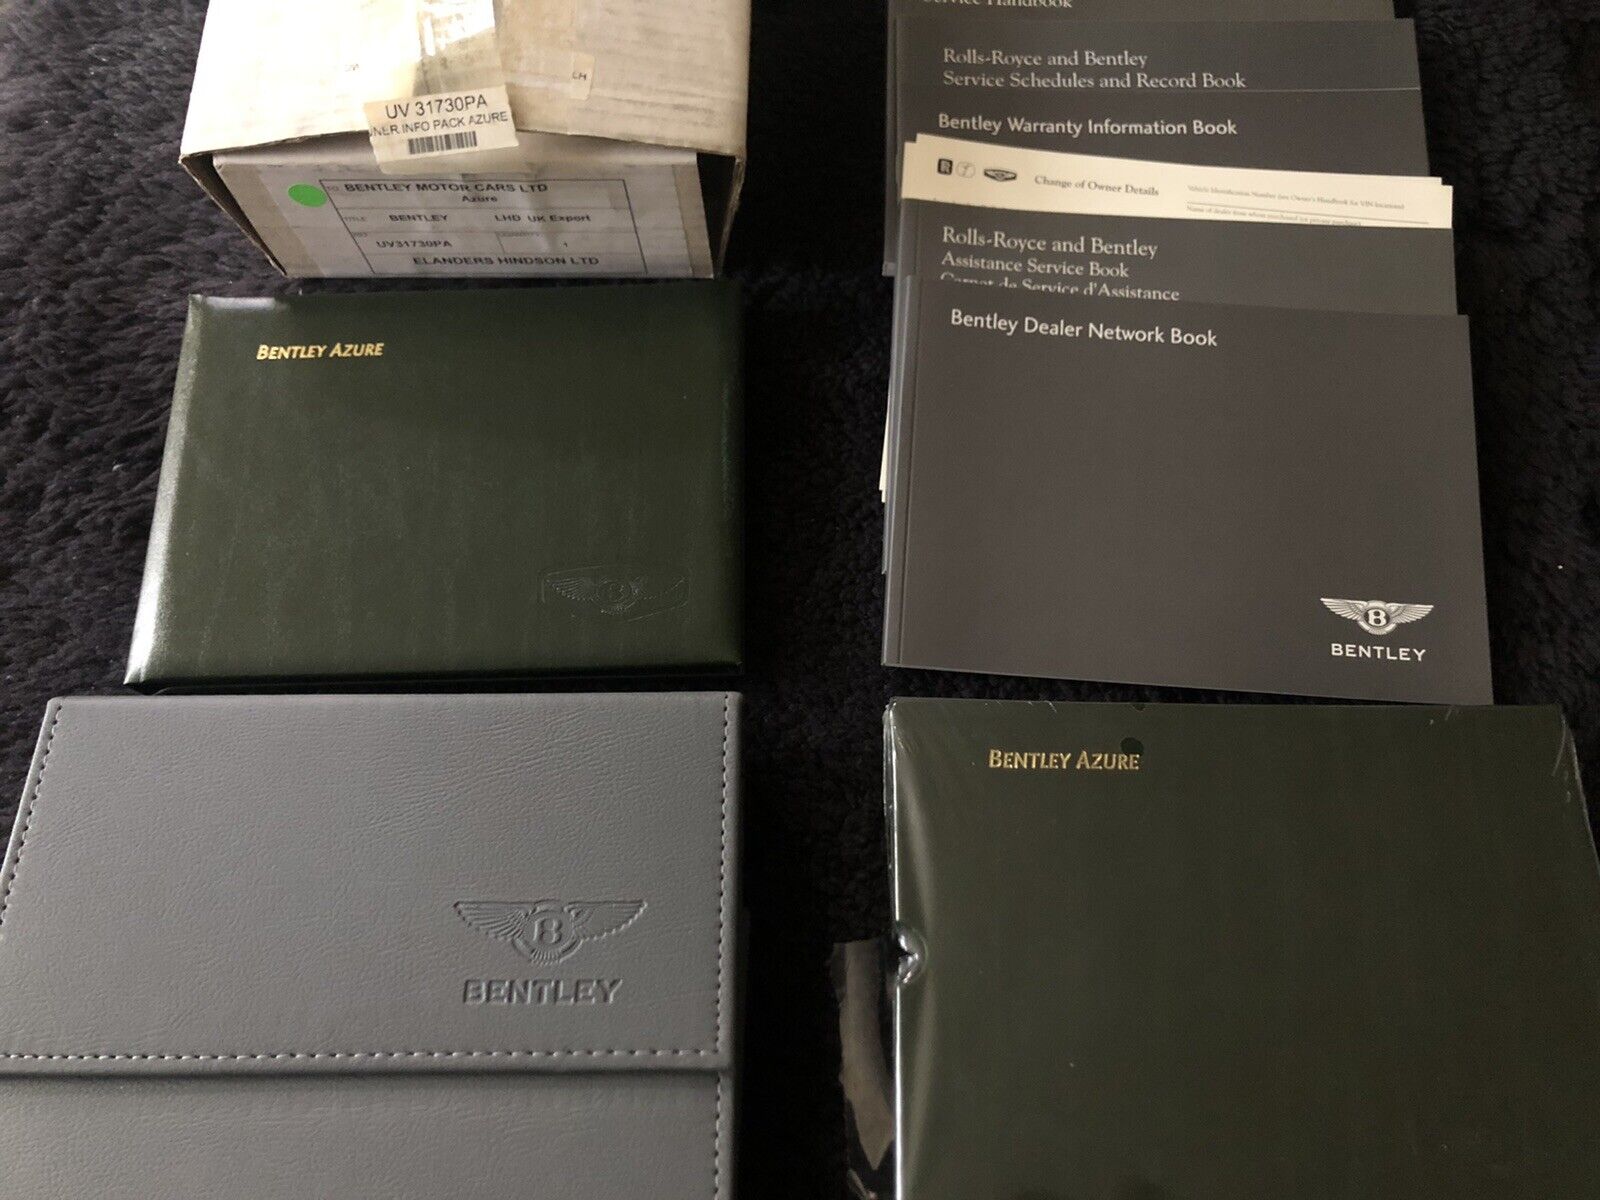 Bentley Azure 2000-01 Owners Manual Handbook Complete Set TSD7360 OEM NLA NOS